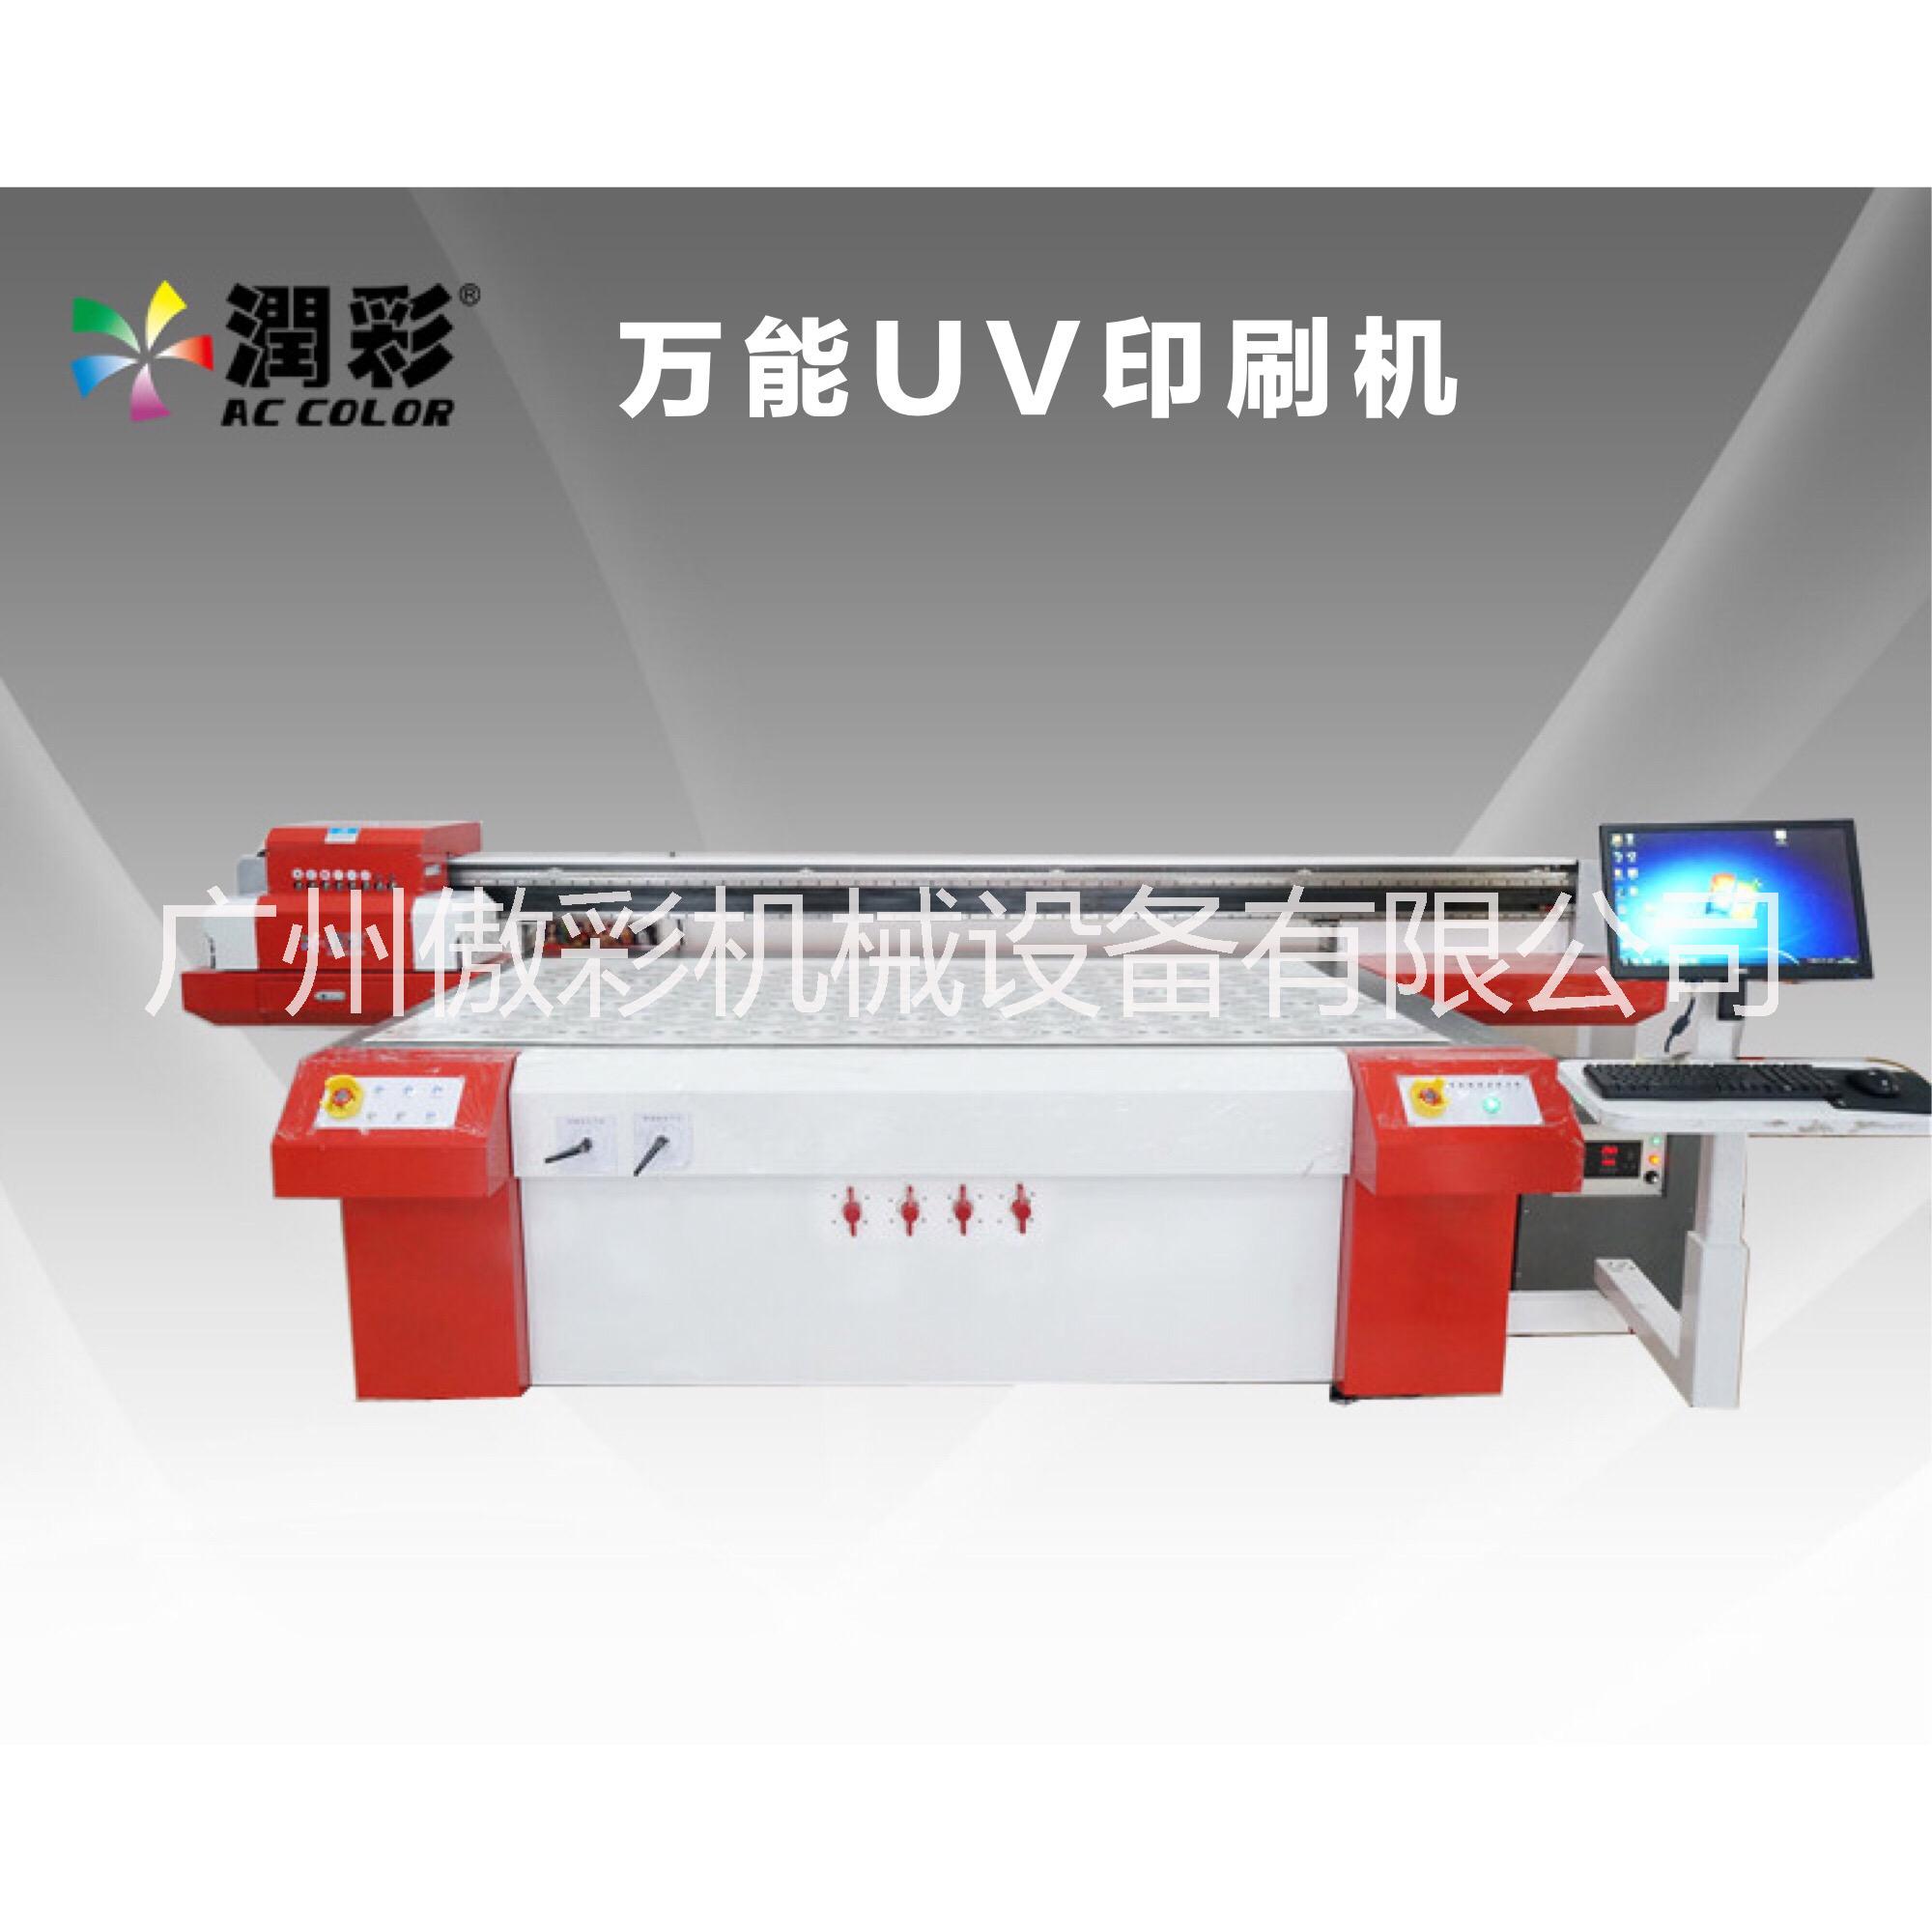 广州傲彩万能广告UV印刷机玻璃印刷机亚克力印刷机手机壳印刷机广州傲彩广告婚纱UV印刷机图片